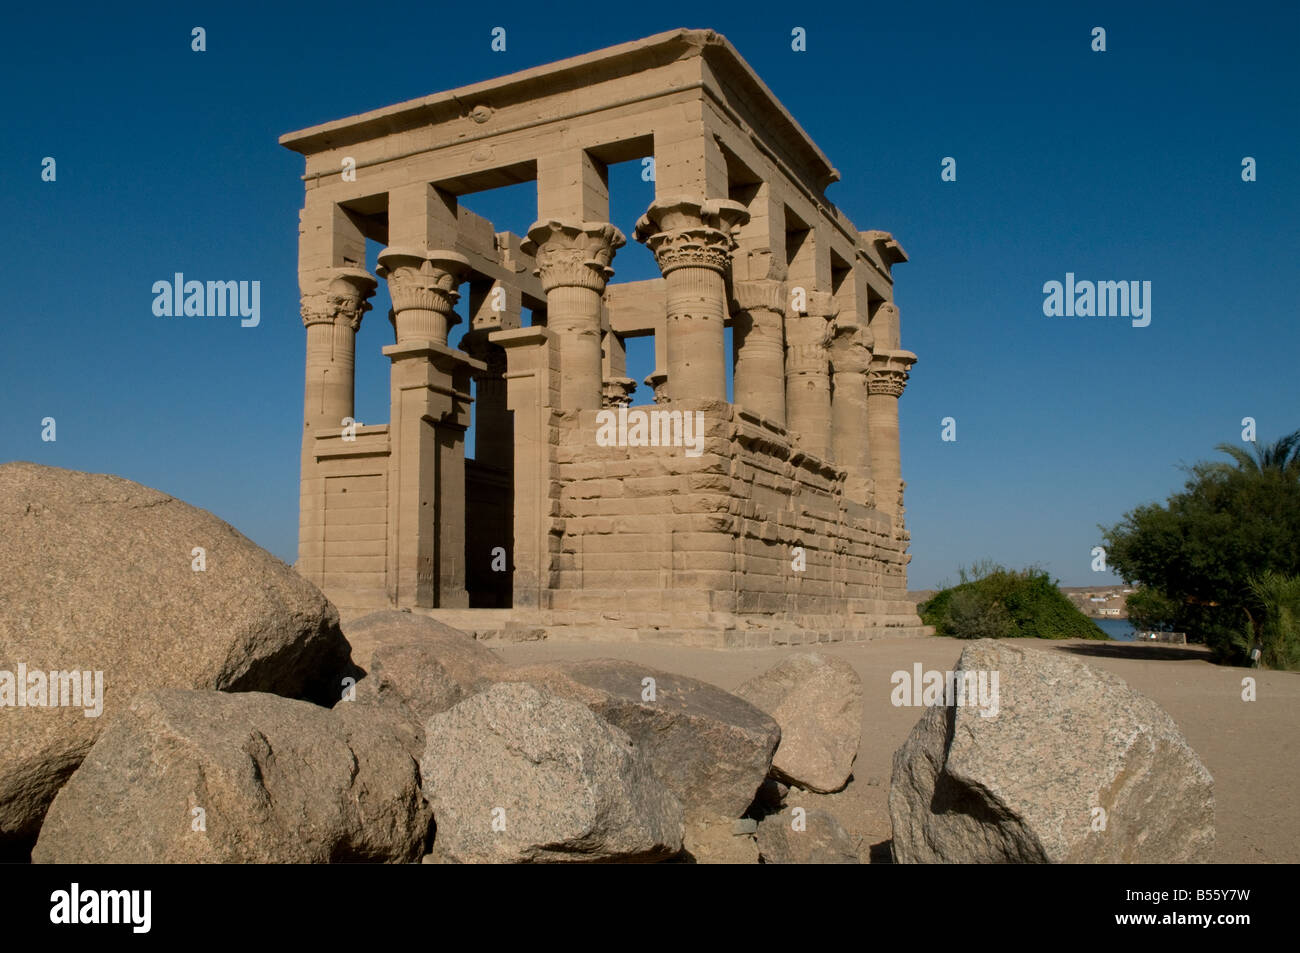 Kiosque de Trajan temple hypaethral attribuée à l'empereur romain Trajan dans le temple de Philae sur l'île Agilkia dans le réservoir du barrage d'Assouan Egypte basse Banque D'Images